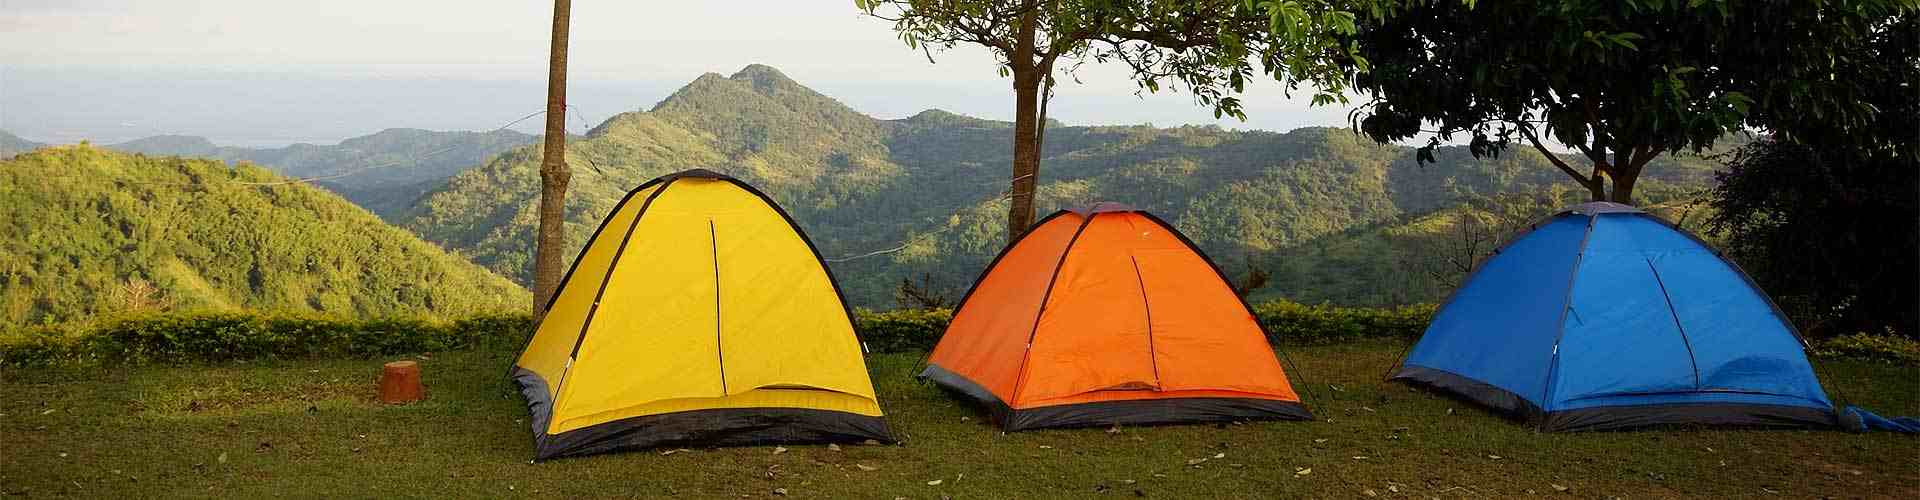 Campings y bungalows en Ororbia